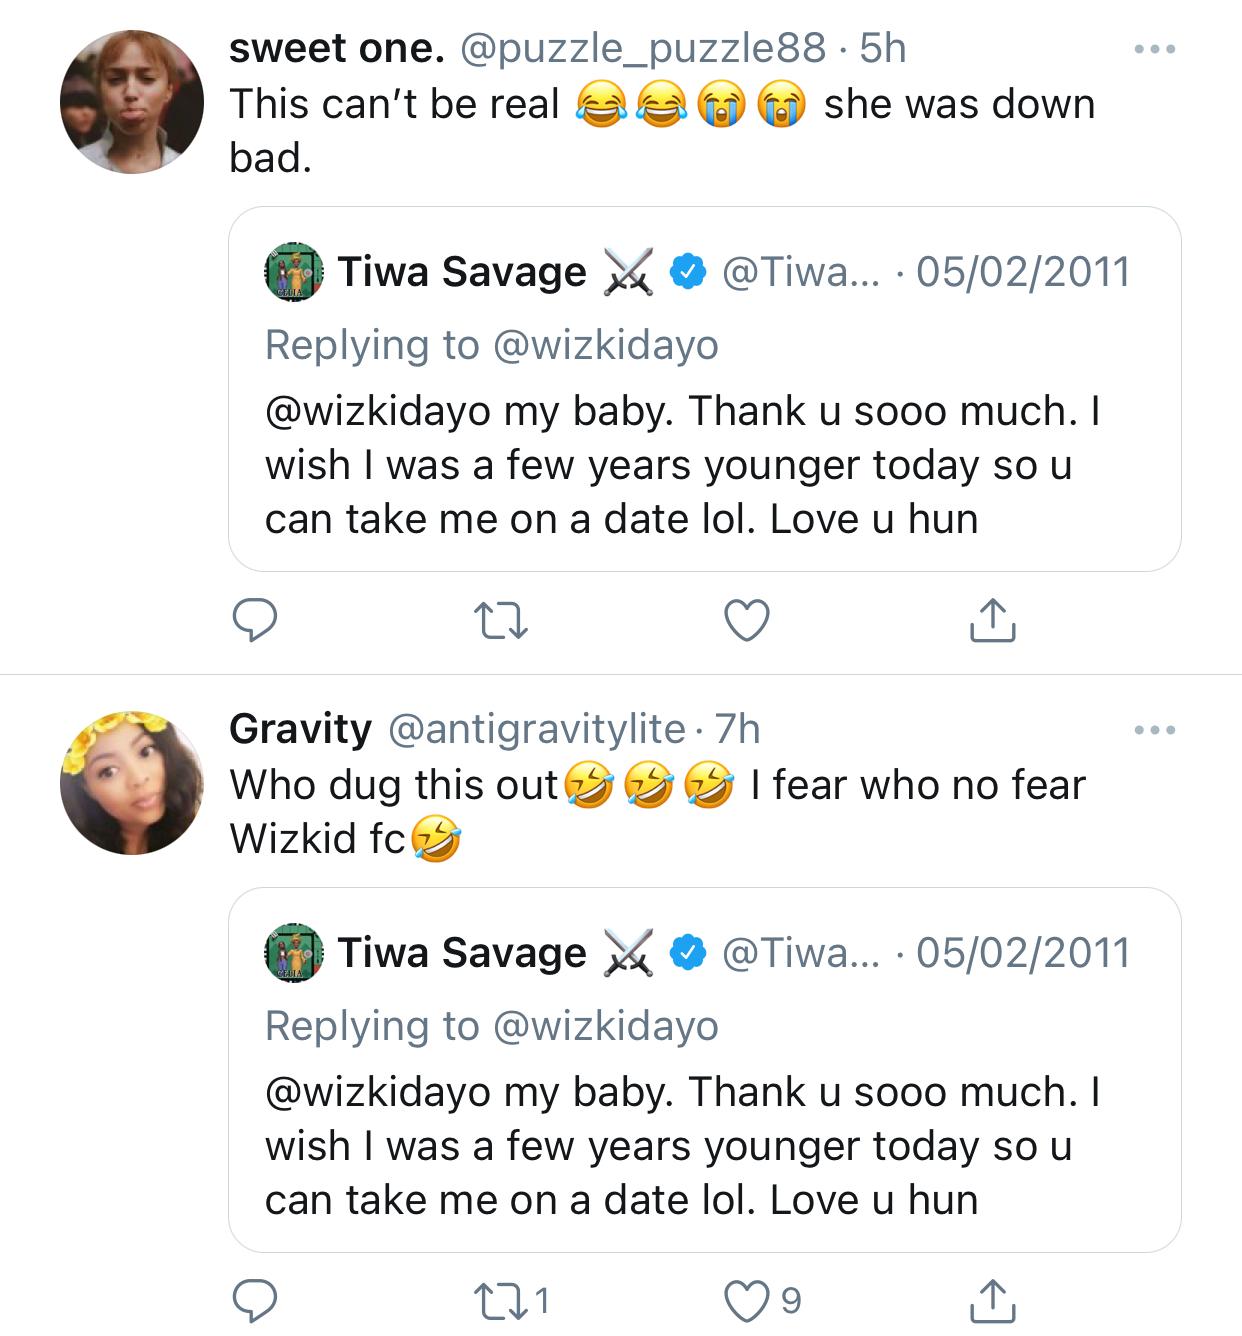 Tweet of Tiwa Savage and Wizkid